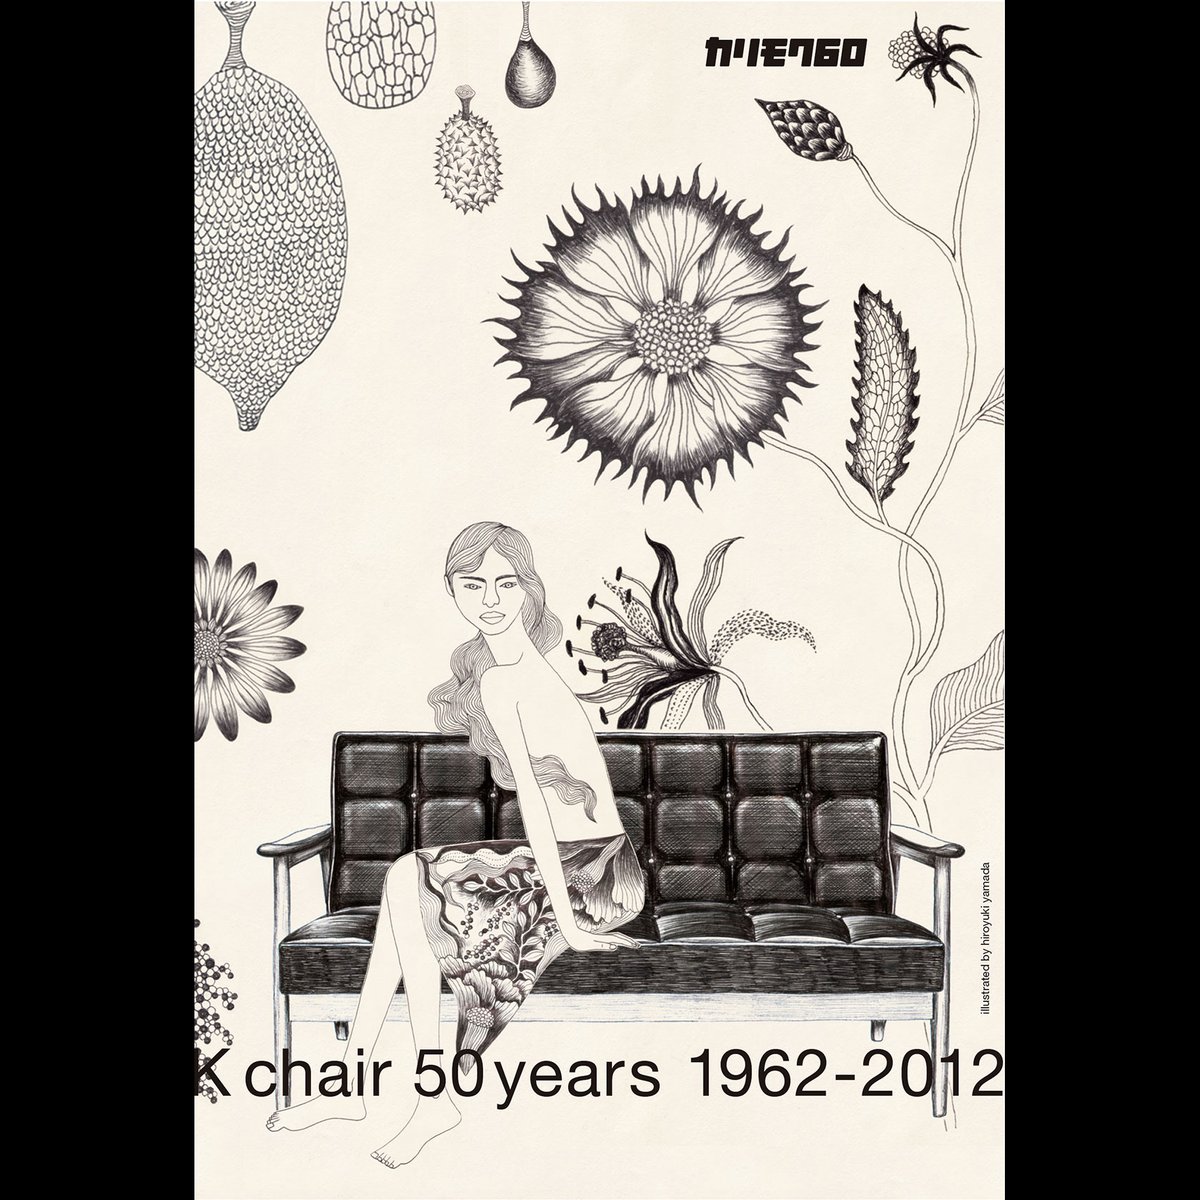 【仕事】カリモクKチェア60周年メインビジュアルを担当しました。10年前、ナガオカケンメイさんとの初仕事となった50周年ポスターから、もう10年も経つんだなと。50周年のポスターも載せておきます。
https://t.co/5FSPeU6tgu 